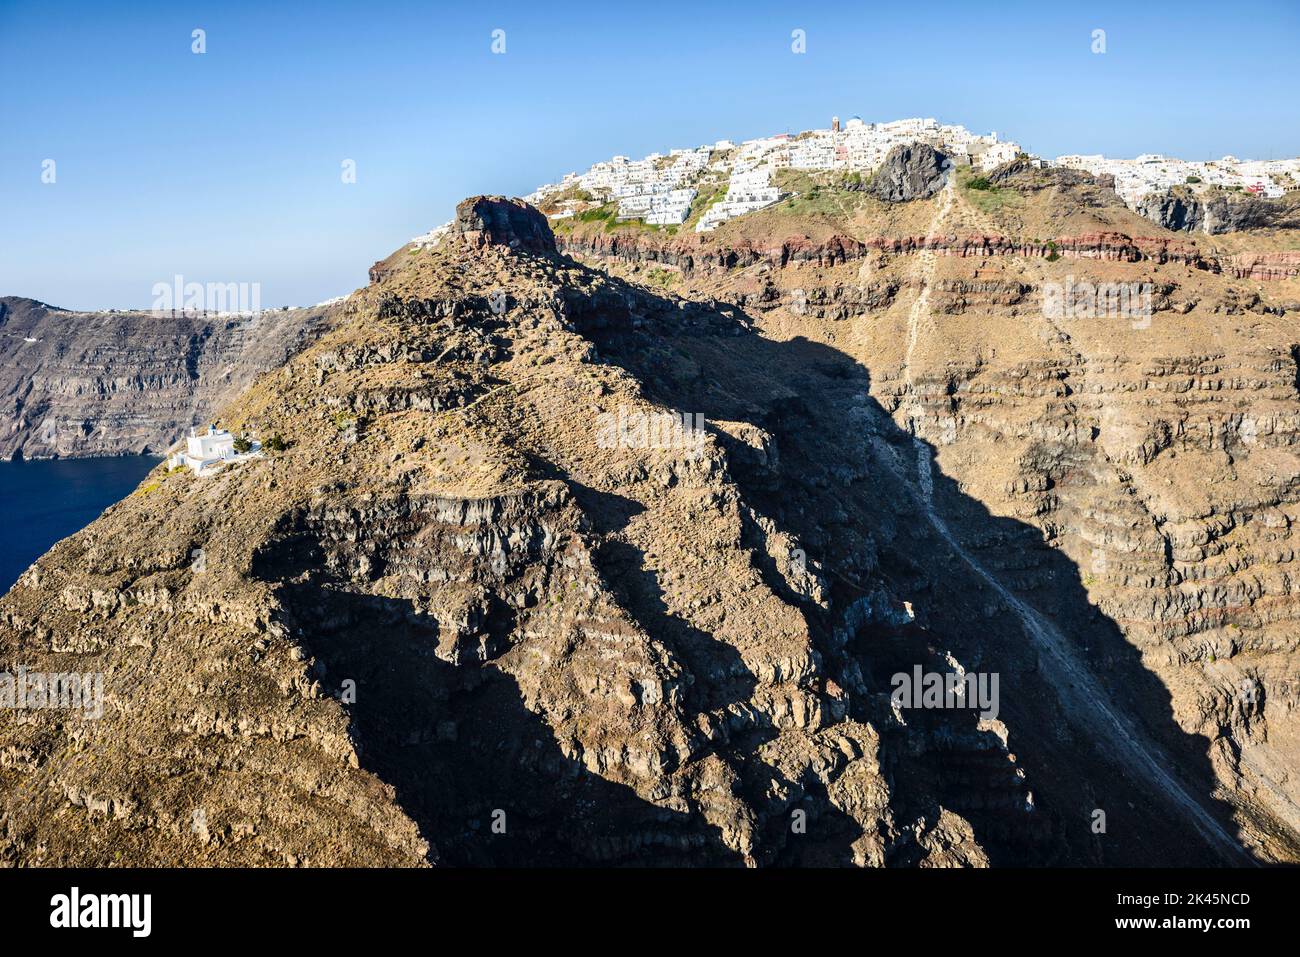 Les falaises et les formations rocheuses d'une île dans la mer Égée, avec une ville de maisons blanches au sommet des falaises. Banque D'Images